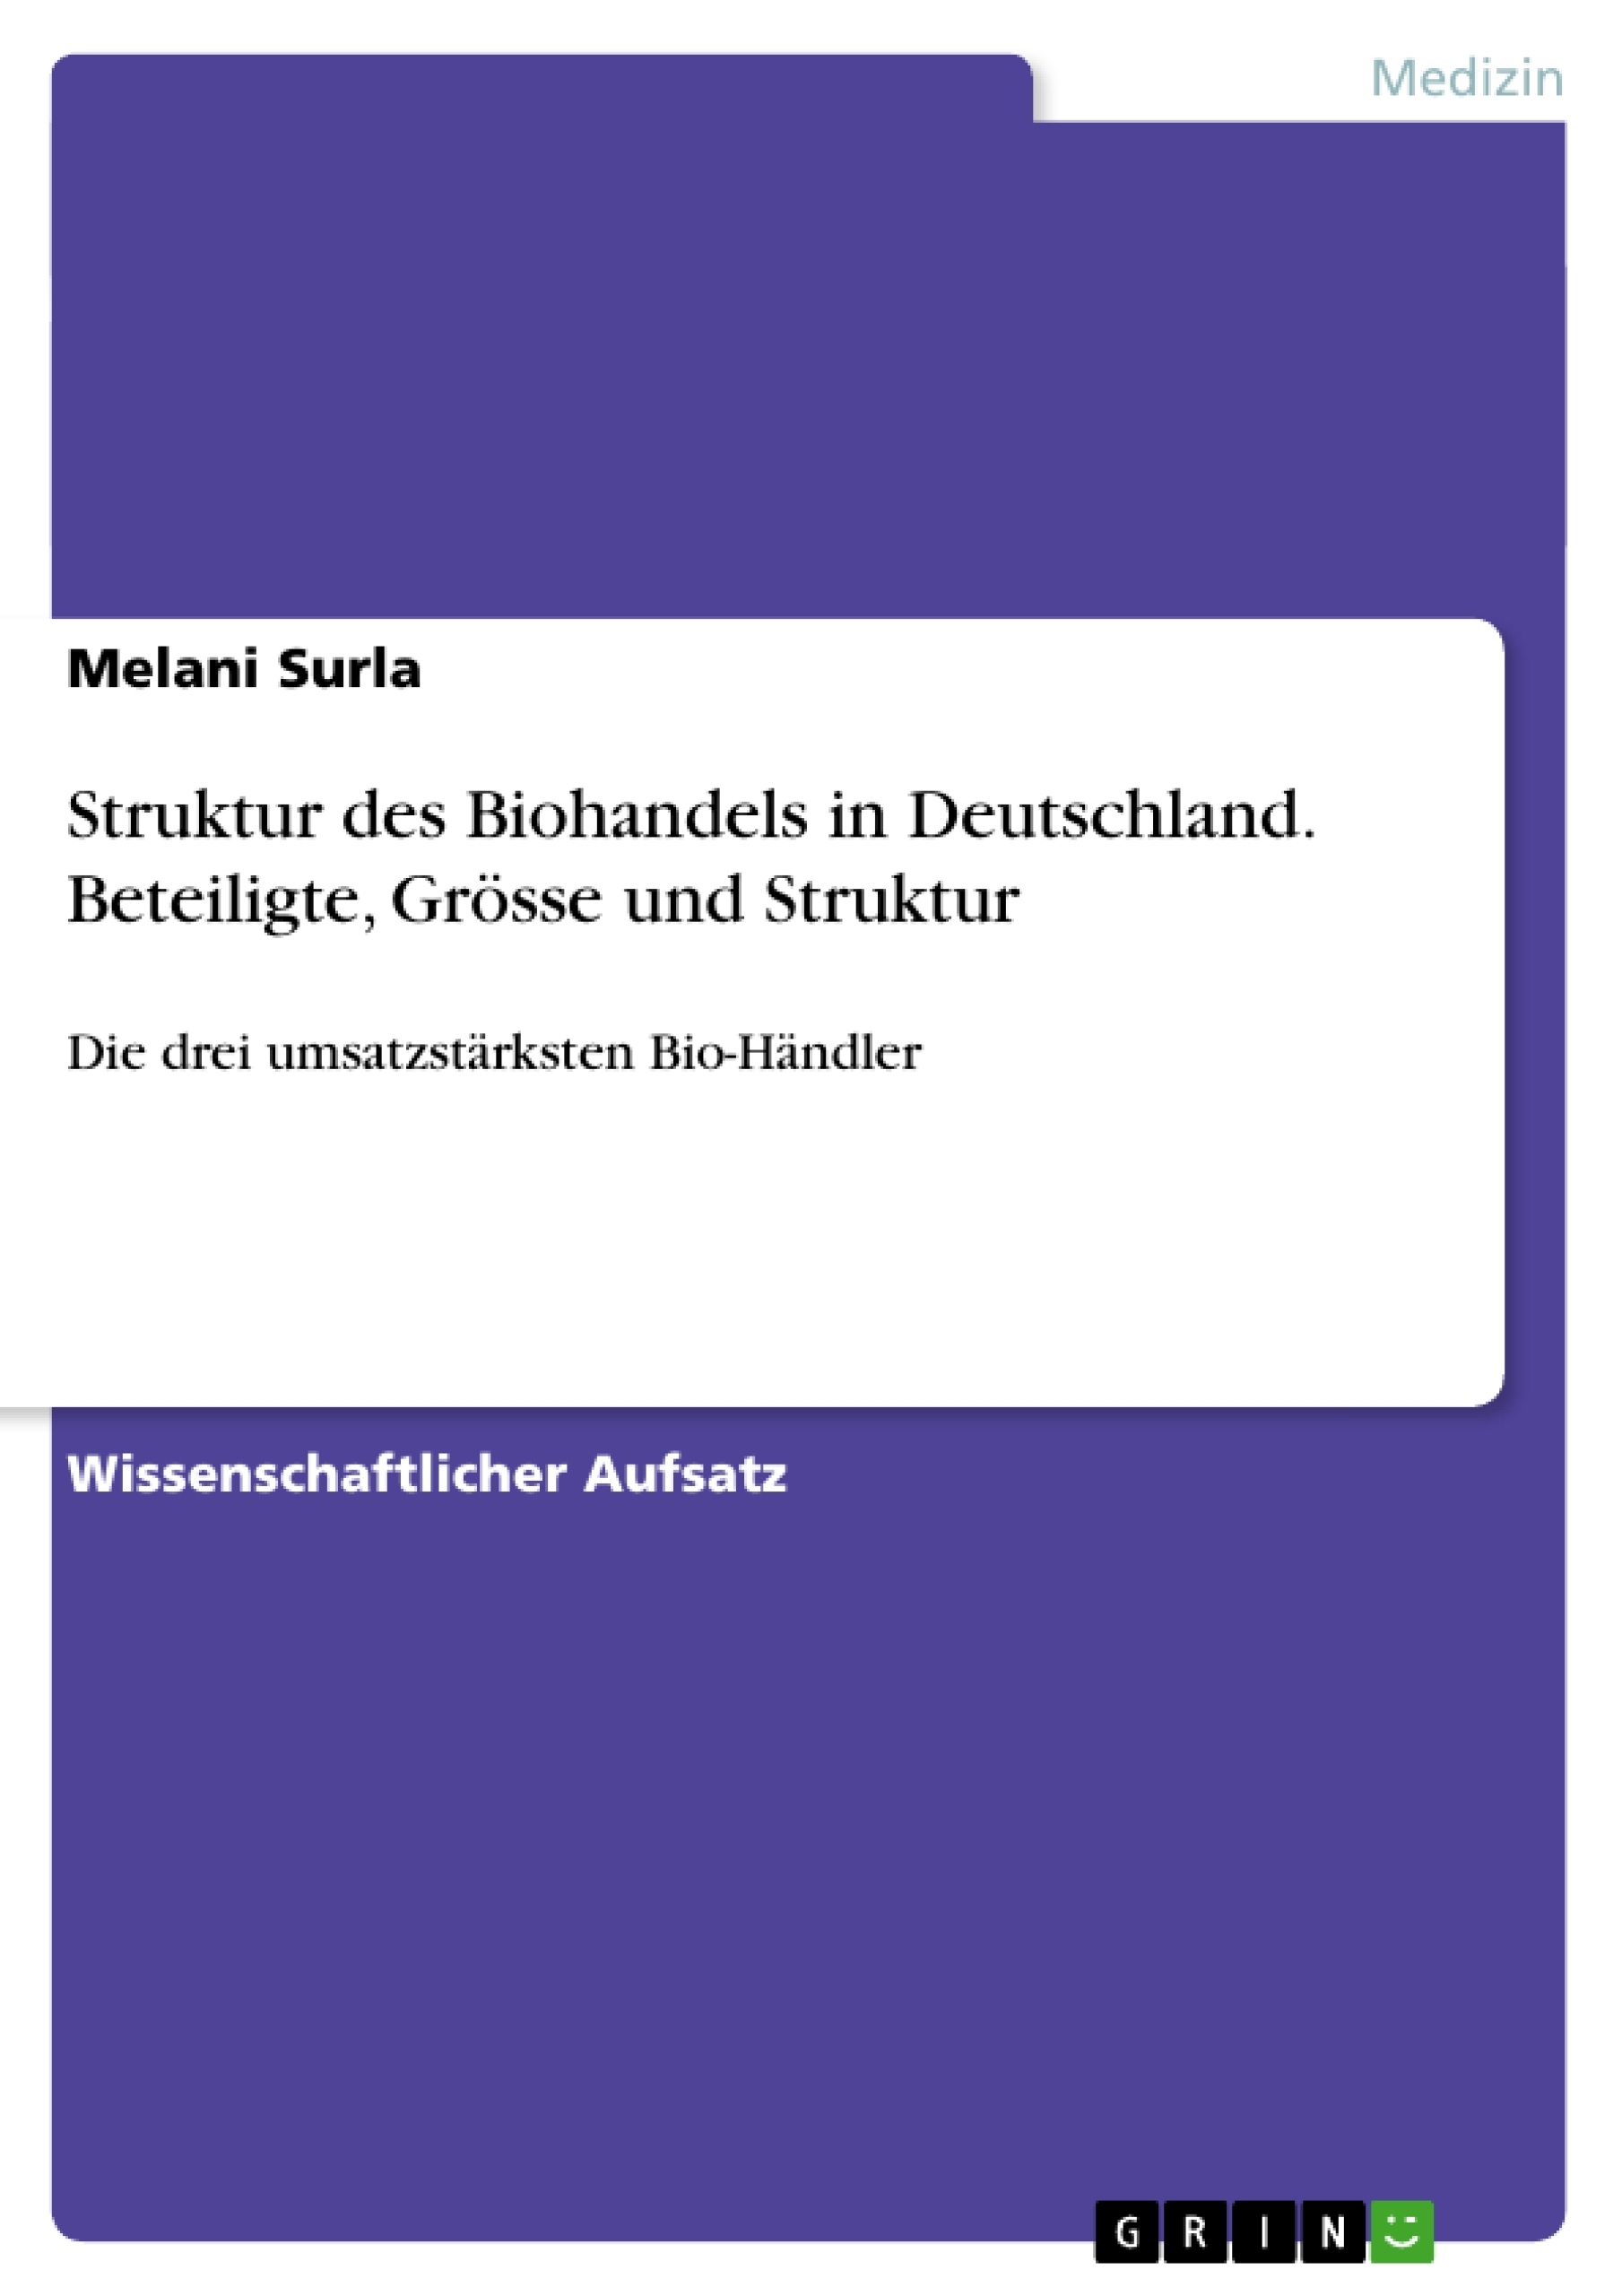 Title: Struktur des Biohandels in Deutschland. Beteiligte, Grösse und Struktur